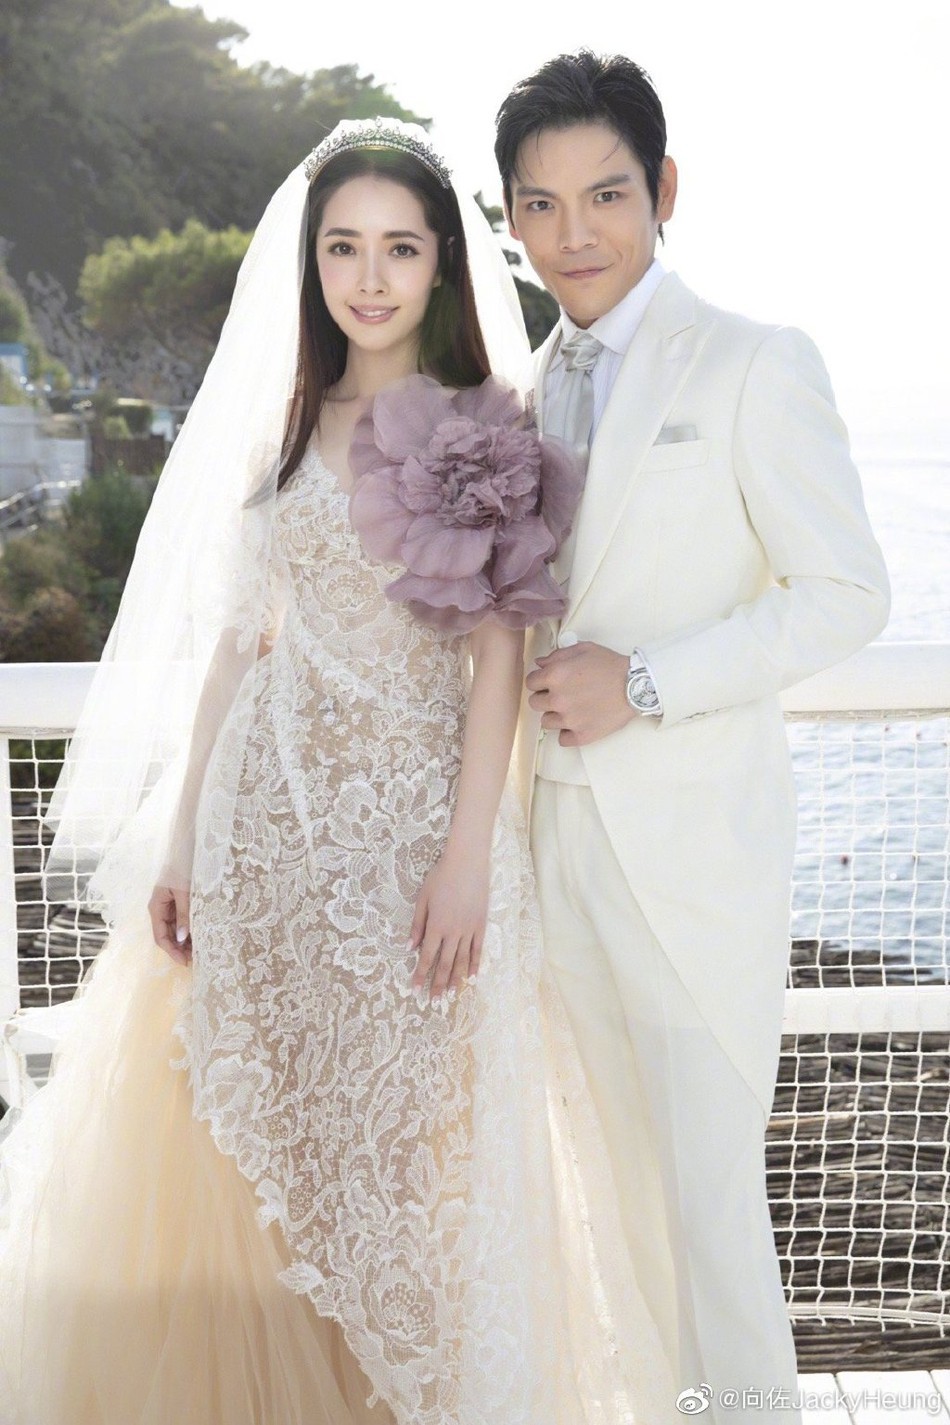 Bóc giá váy cưới cô dâu mới nhà trùm showbiz Hong Kong: Rẻ tiền nhất Cbiz, kém xa Song Hye Kyo, bị Angela Baby đè bẹp - Ảnh 1.